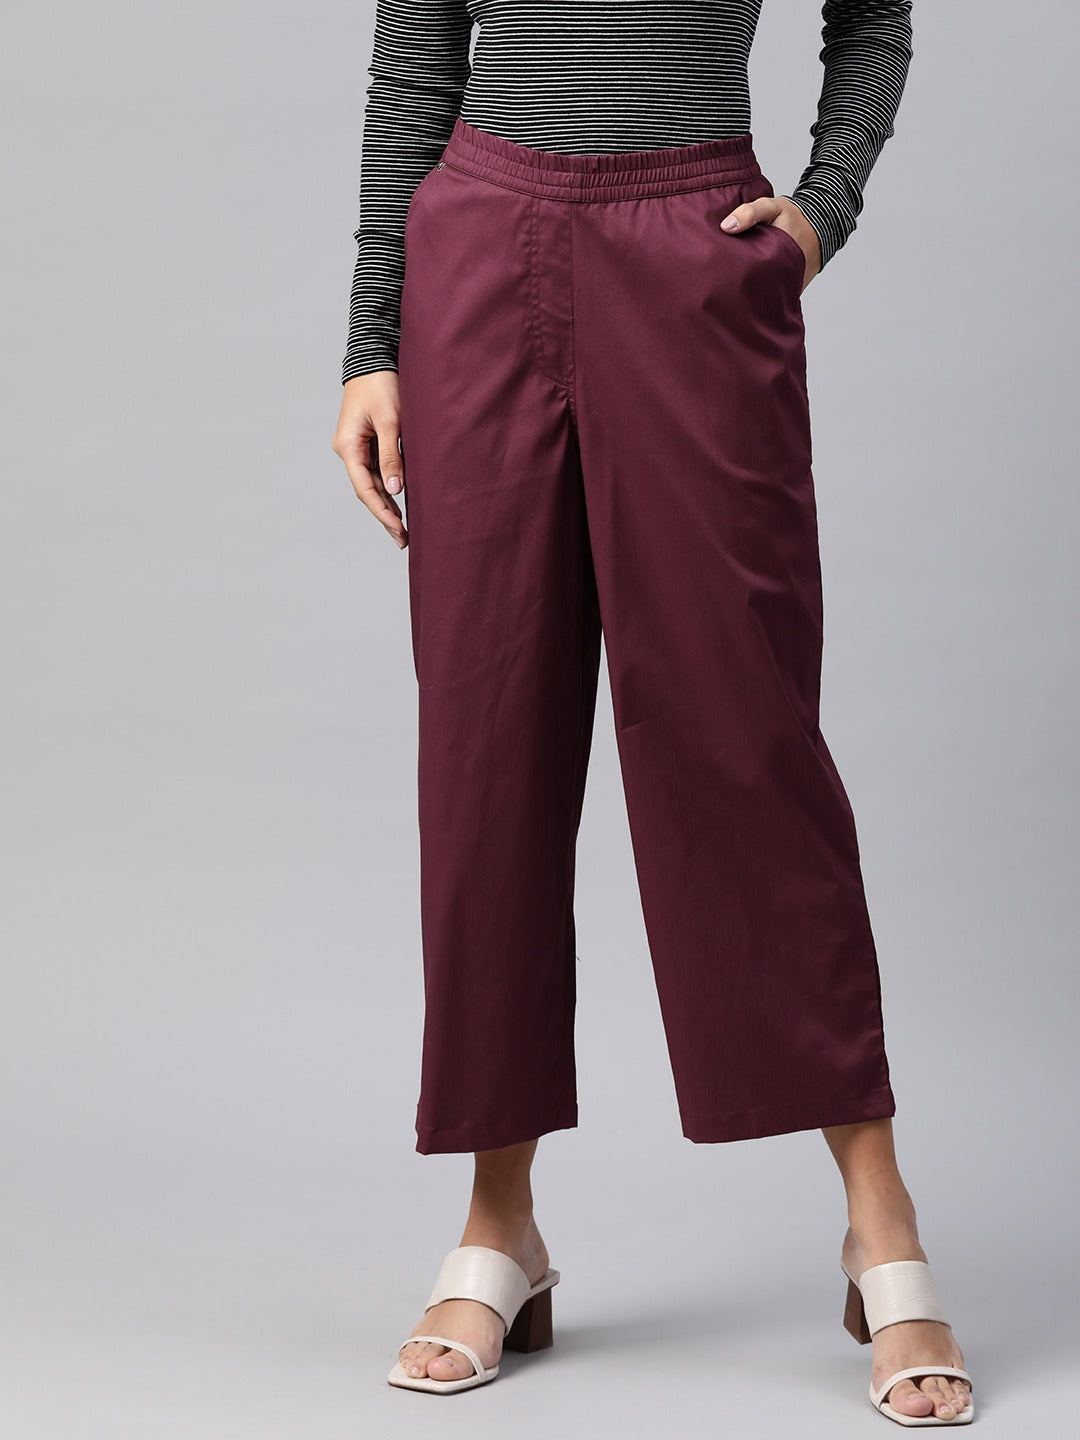 Cotton Lycra Fabric Burgundy Color Trouser